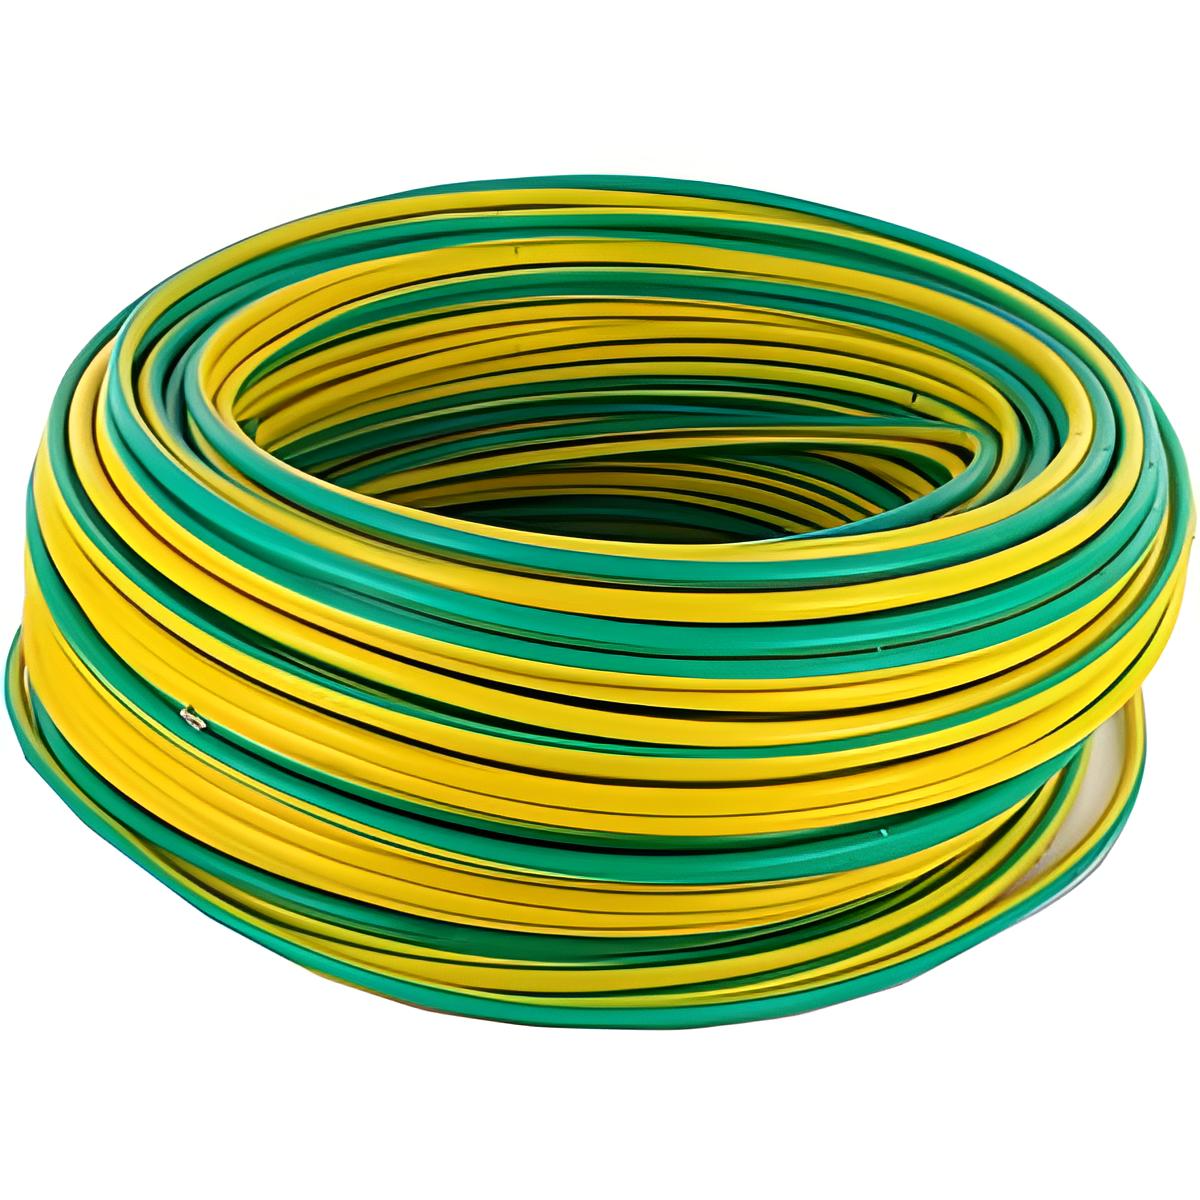 Rouleau de câble/fil T.H 2.5mm² - Supercâble JAUNE-VERT 100m